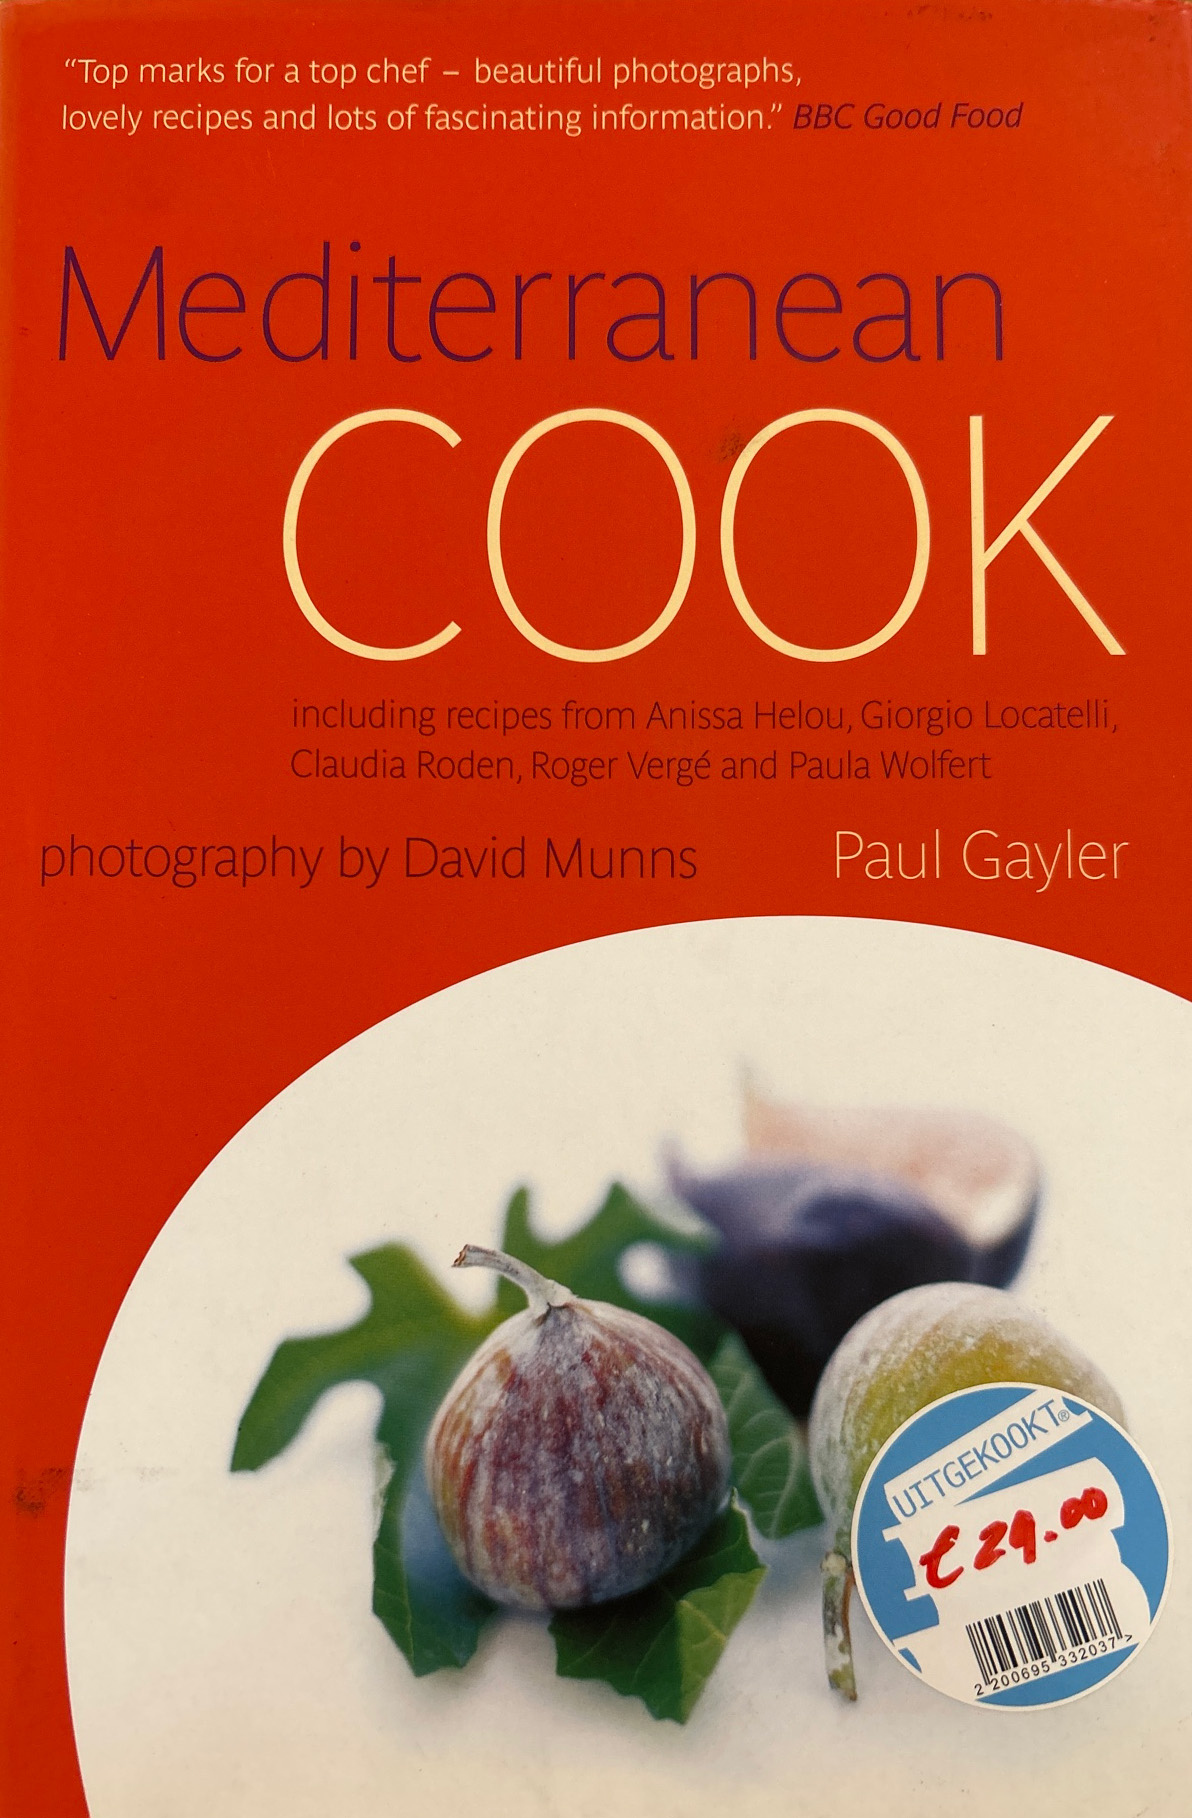 Mediterranean cook – Paul Gayler